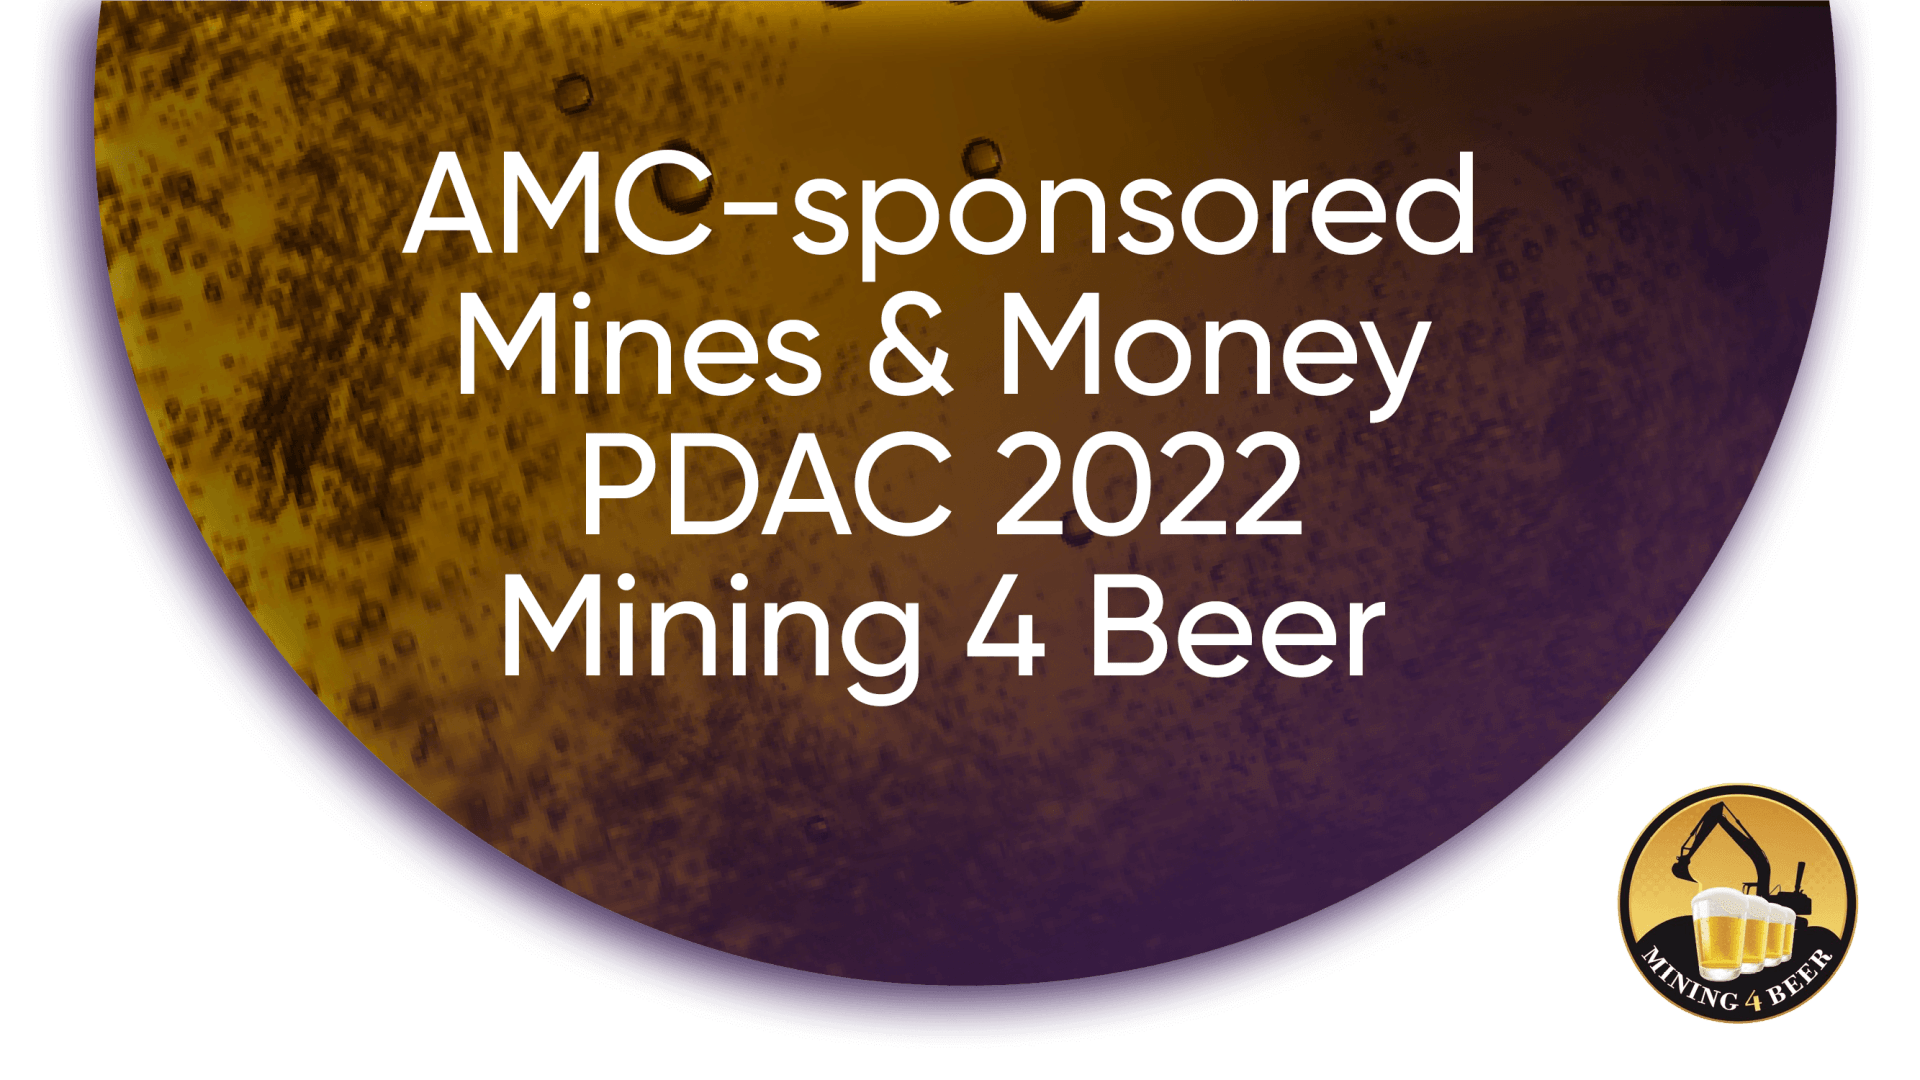 AMC Mines 7 Money PDAC 2022